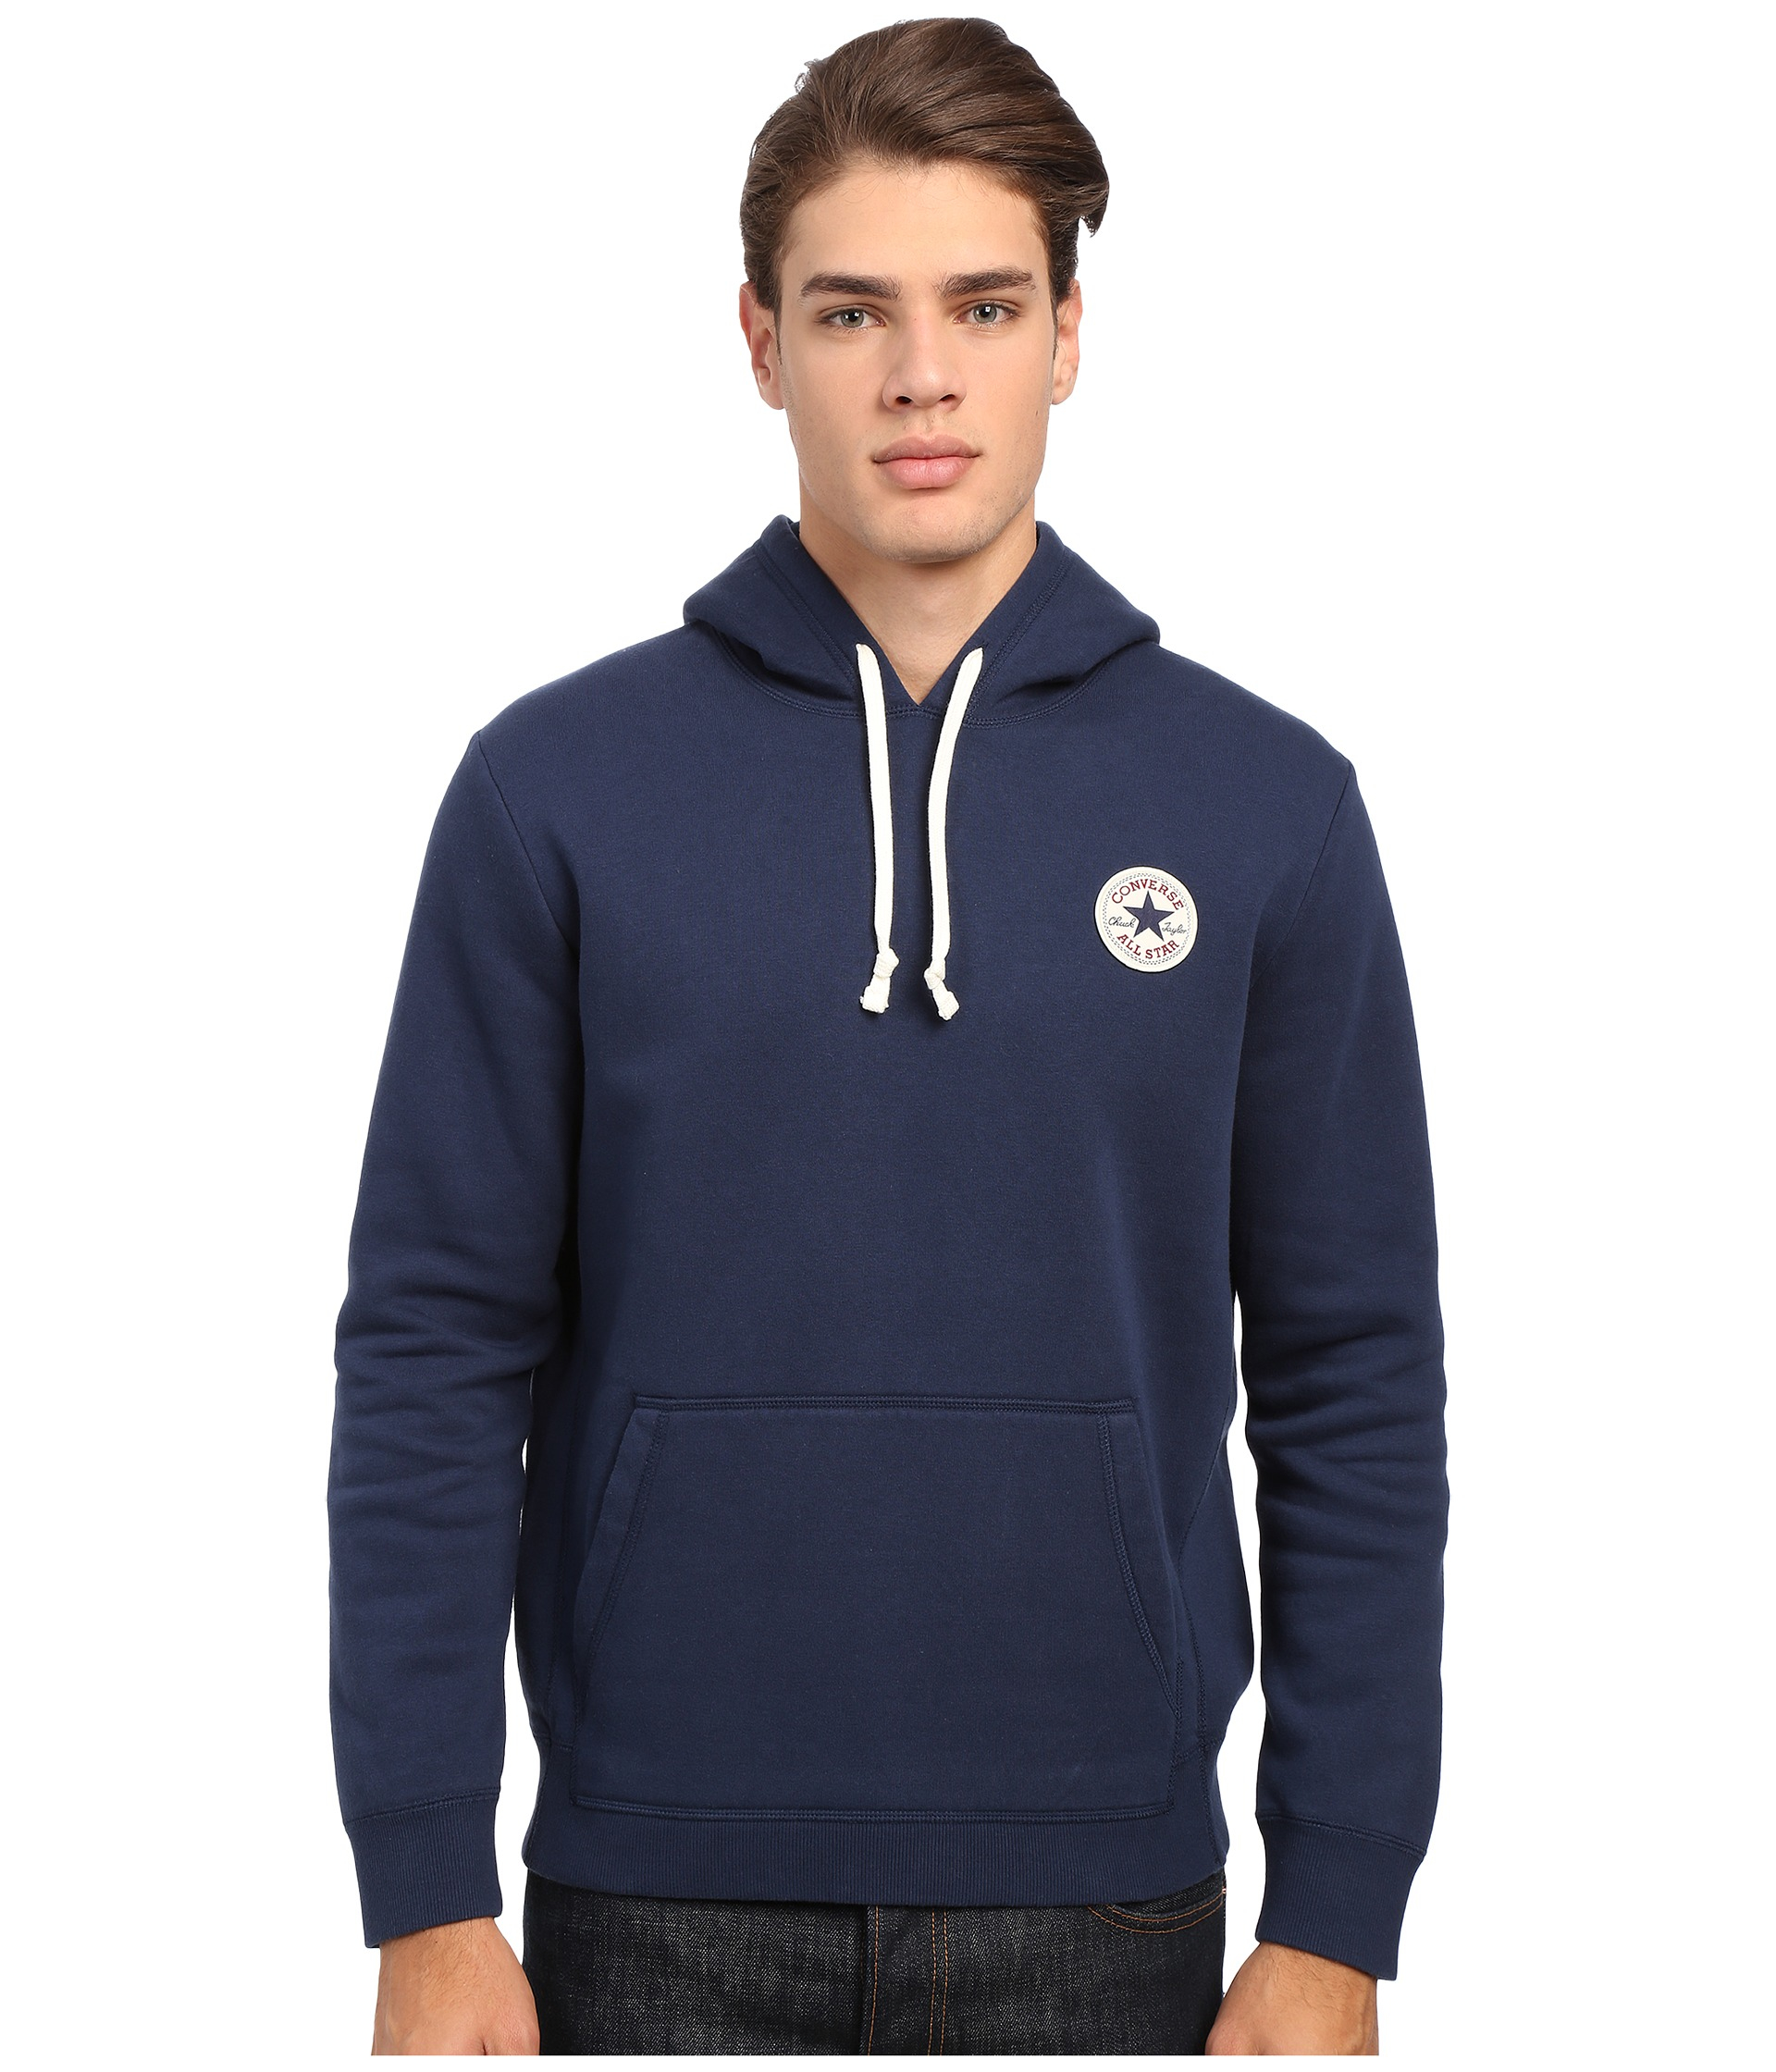 converse blue hoodie